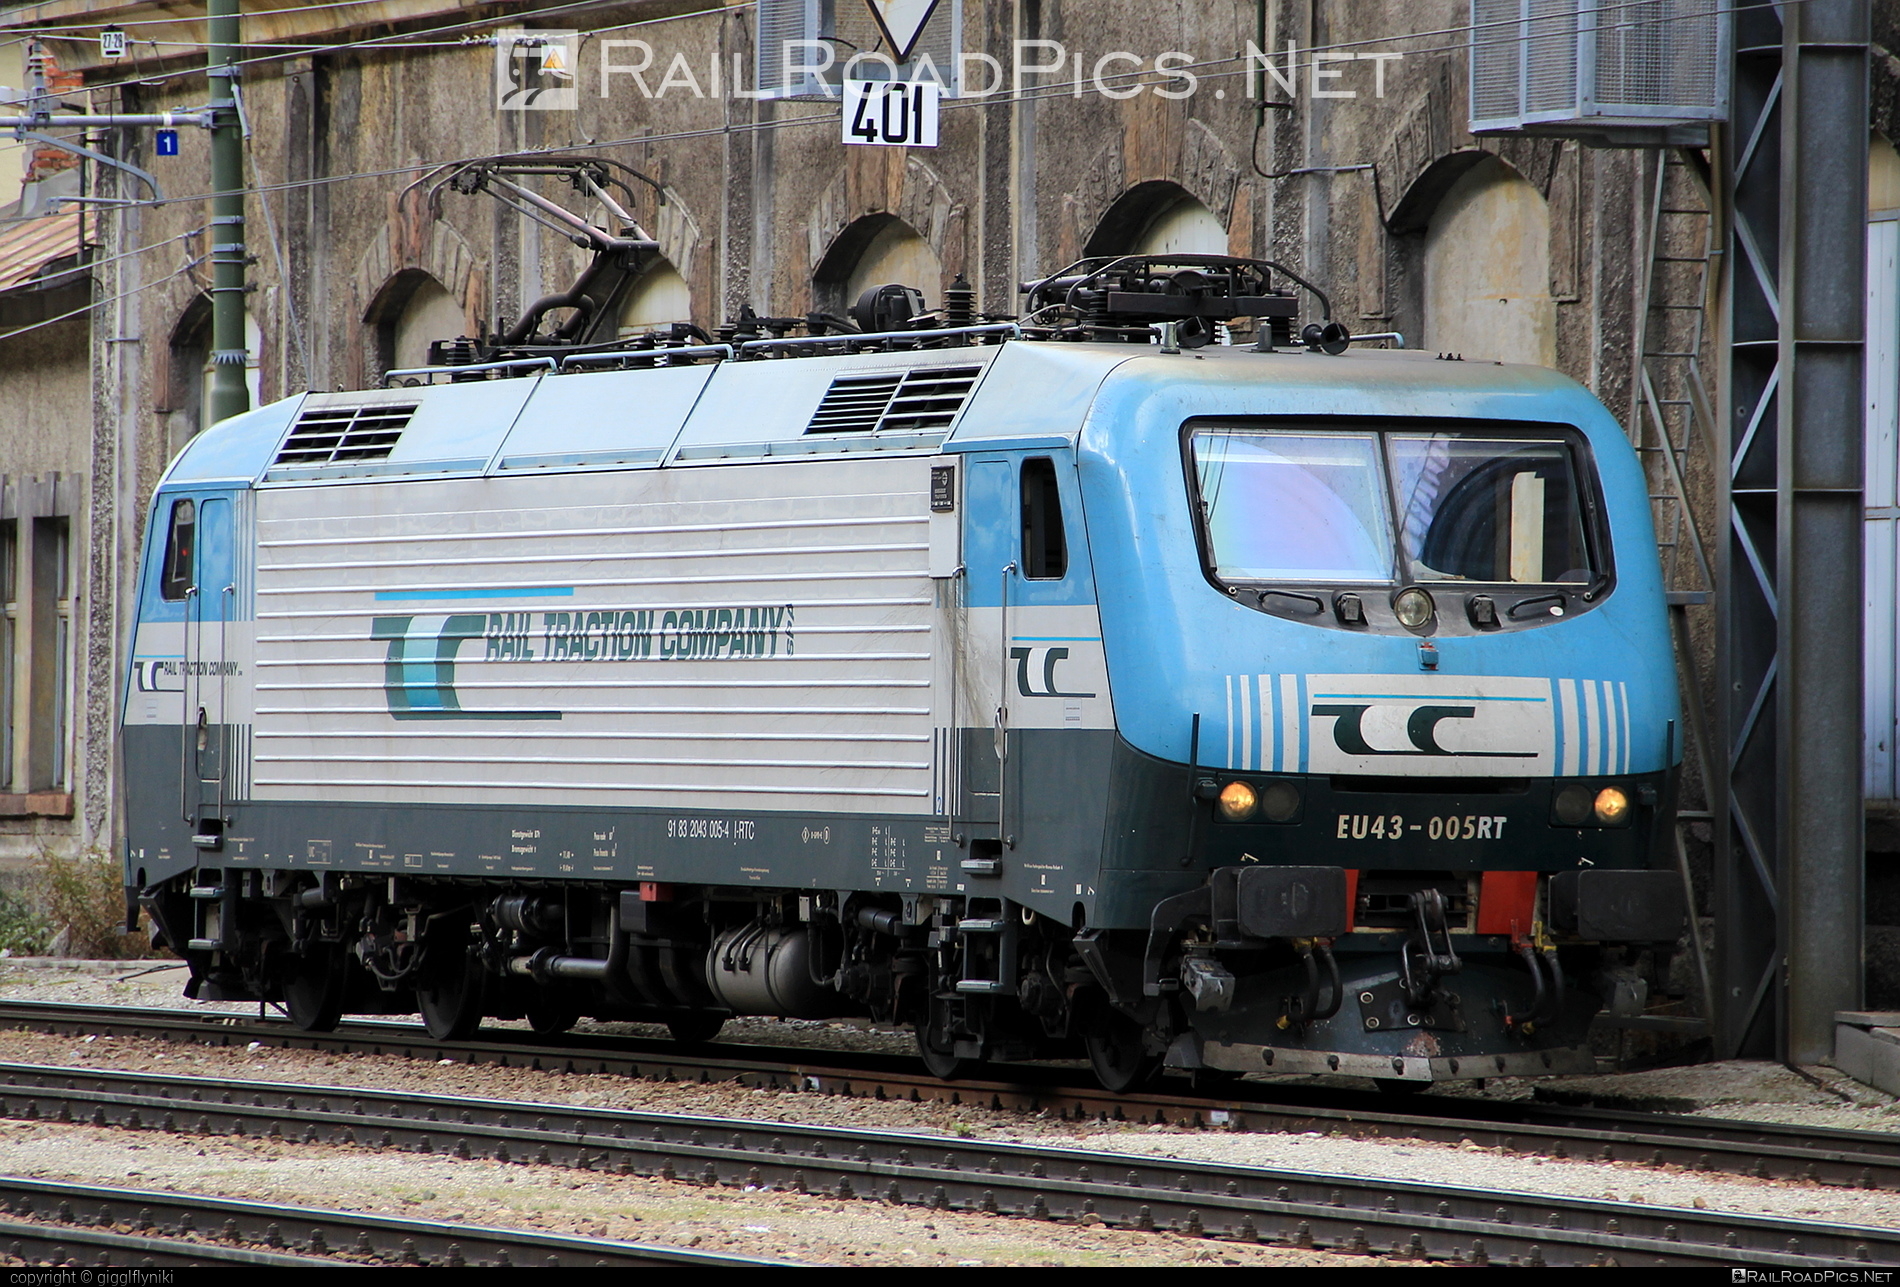 FS Class E.412 - EU43-005 operated by Rail Traction Company #RailTractionCompany #e412 #fsClassE412 #rtc